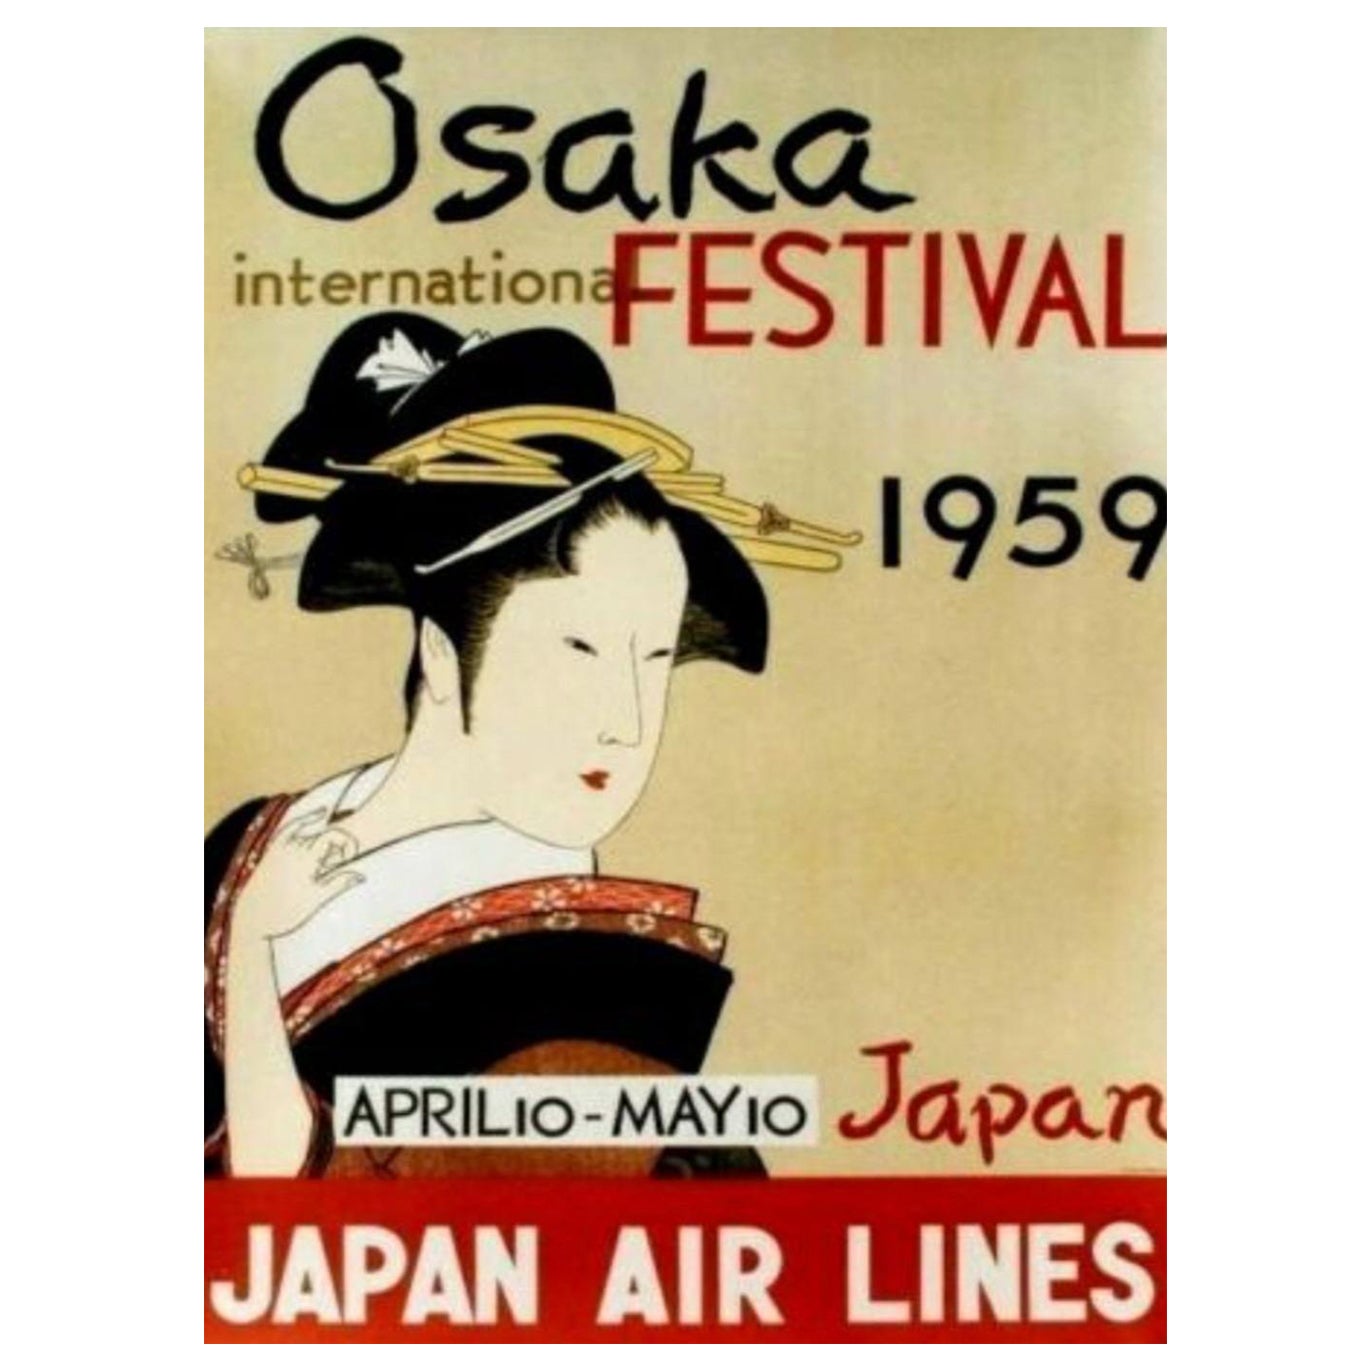 1959 Japan Air Lines, Osaka International Festival Original Vintage Poster For Sale